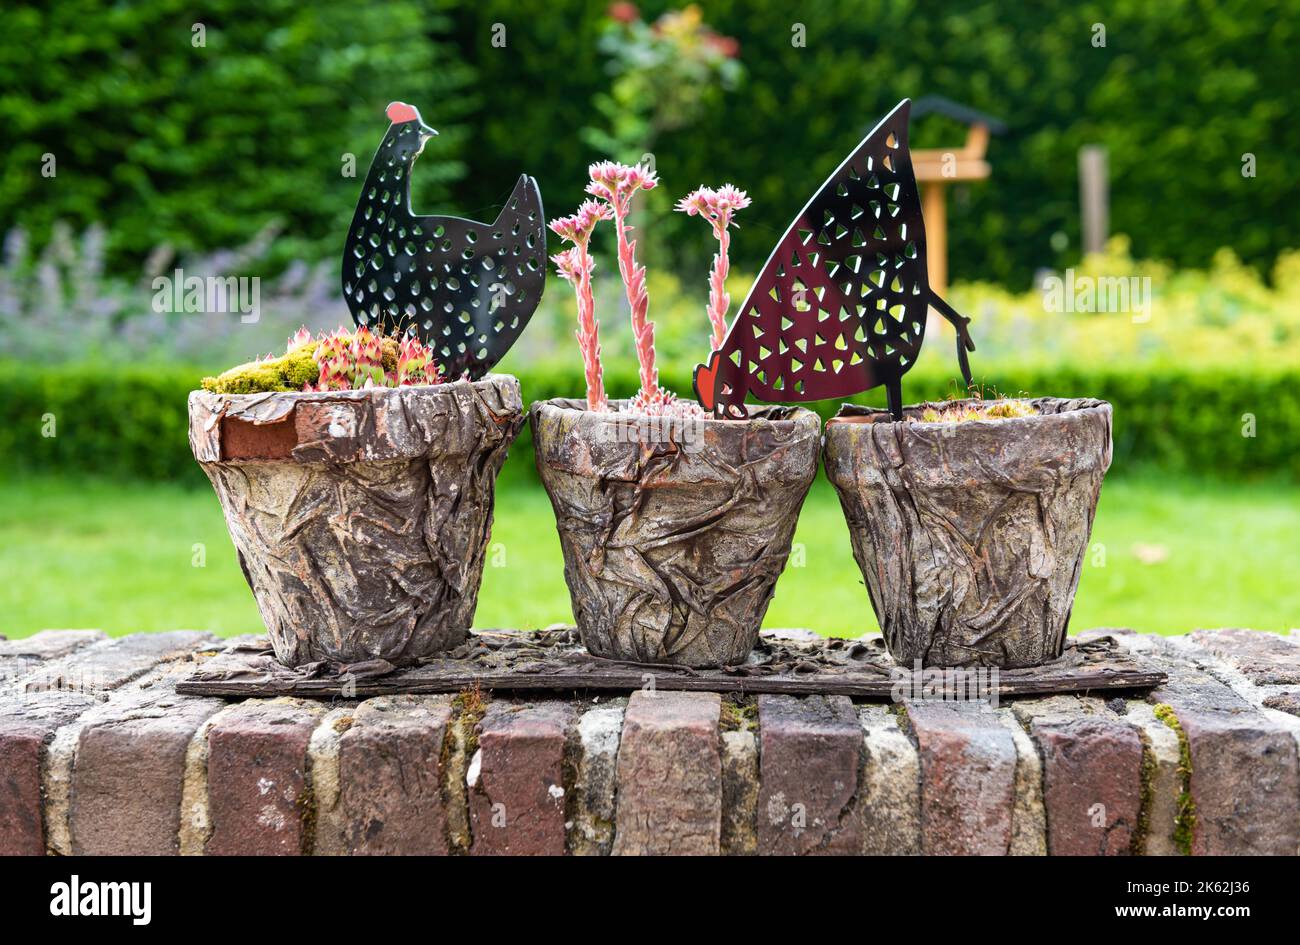 Zwalm, région de Flandre orientale - Belgique - 07 14 2021 gros plan de plantes décoratives et de jouets de jardin dans un pot en pierre Banque D'Images